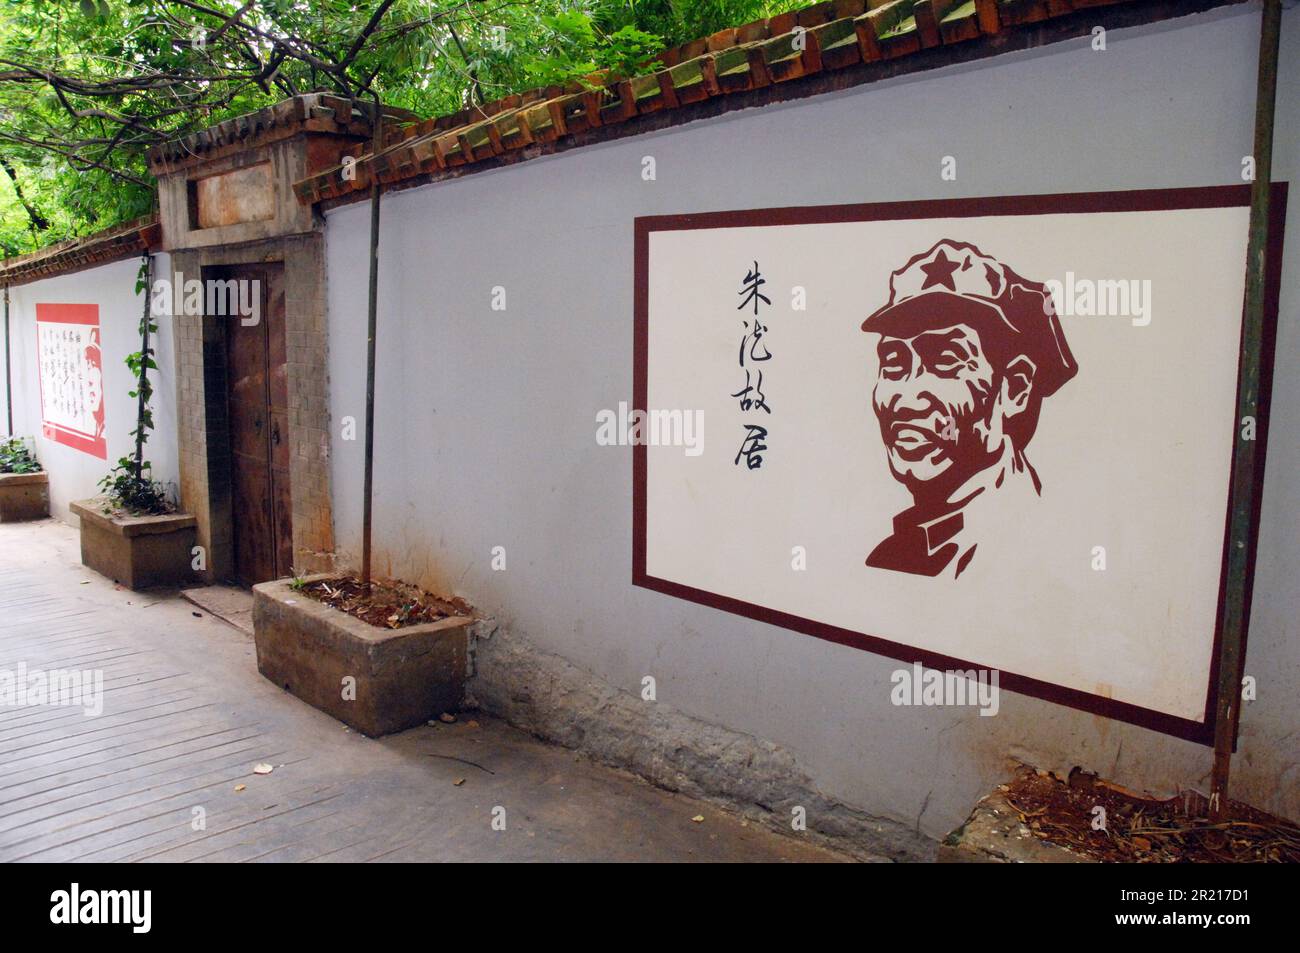 Le mura che circondano l'ex residenza di Zhu De in Kunming, Yunnan, Cina, decorate con opere d'arte relative al rivoluzionario. Zhu De era un ex generale cinese, politico, rivoluzionario e uno dei pionieri del Partito comunista cinese. Dopo la fondazione della Repubblica popolare Cinese, nel 1955 Zhu divenne uno dei dieci Marescialli dell'Esercito popolare di Liberazione. Foto Stock